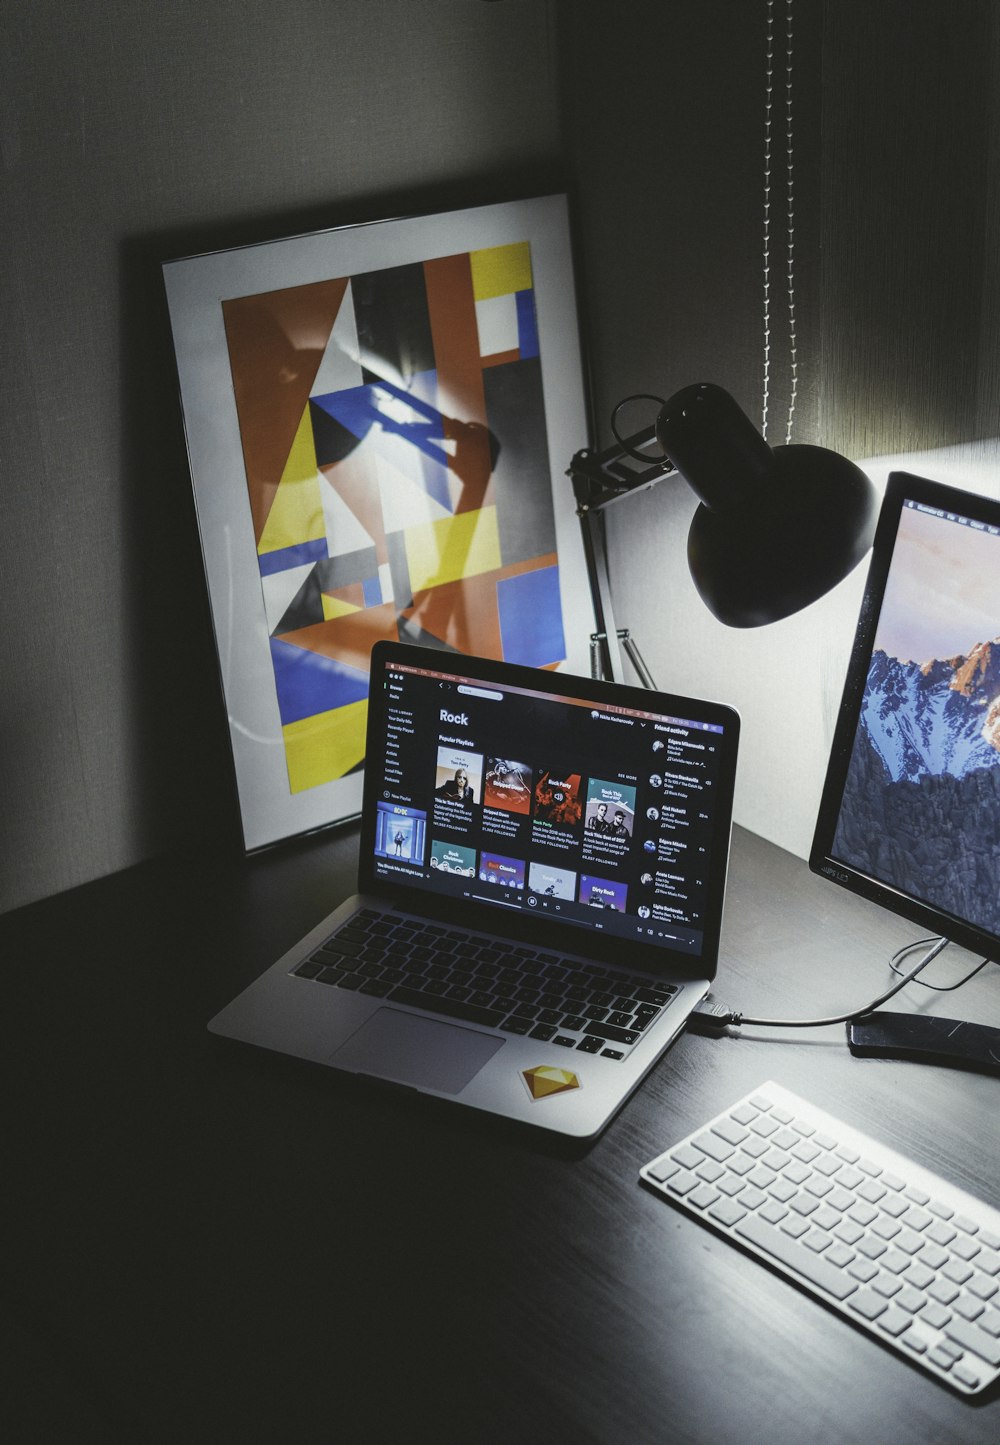 MacBook ligado na mesa ao lado do iMac